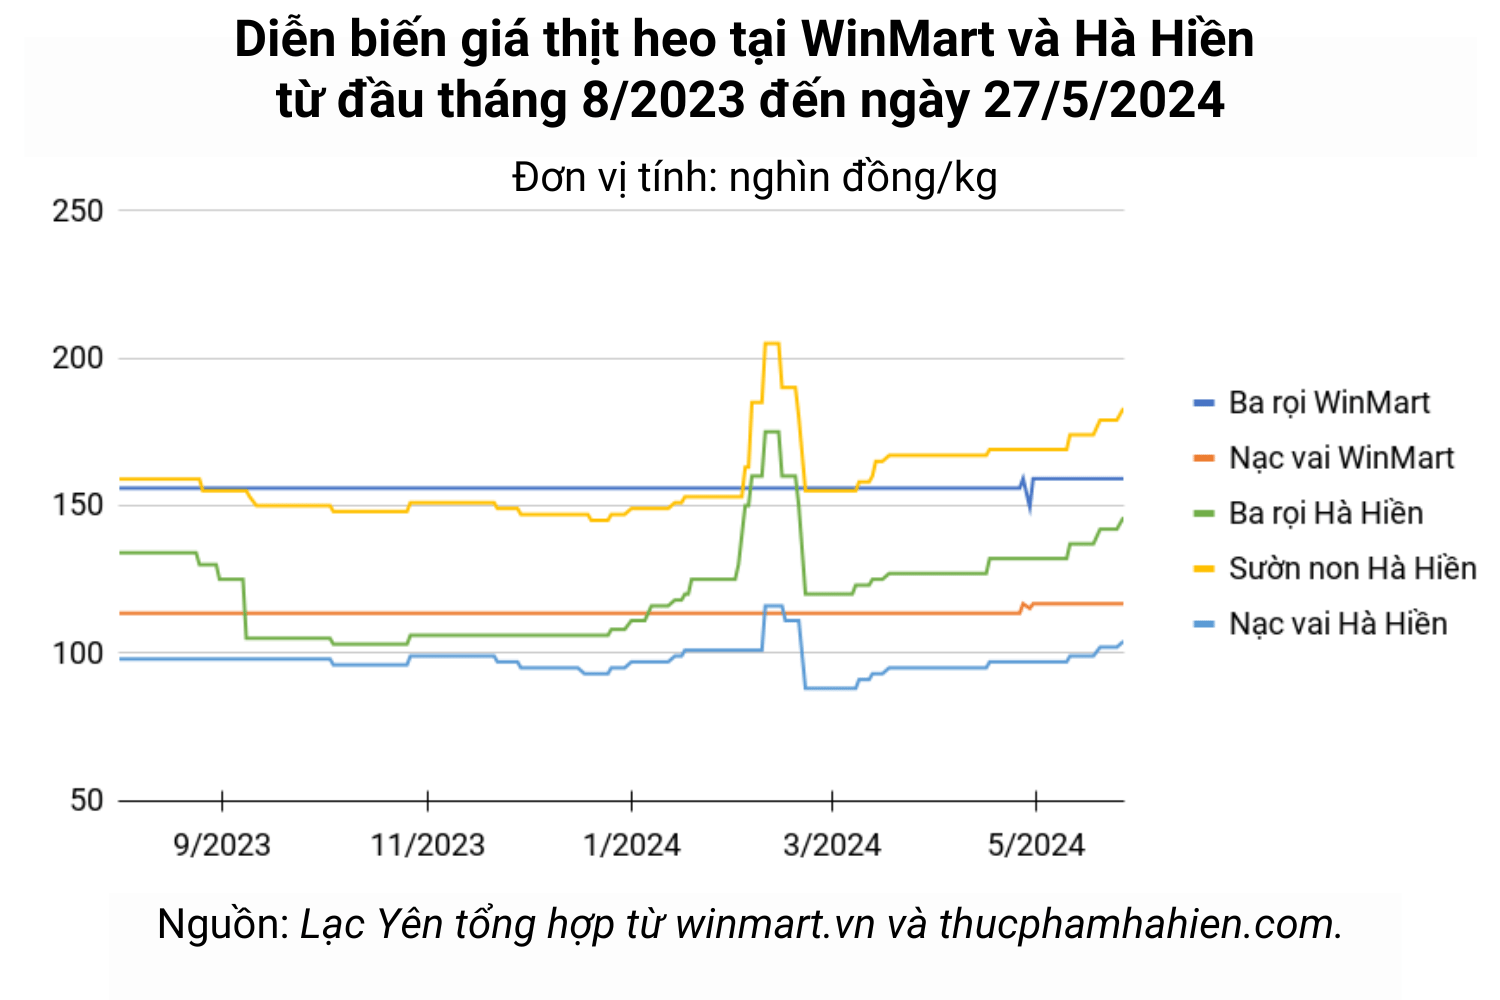 Phiên đầu tuần 27/5, giá thịt heo Hà Hiền tăng từ 2.000 đồng/kg đến 4.000 đồng/kg